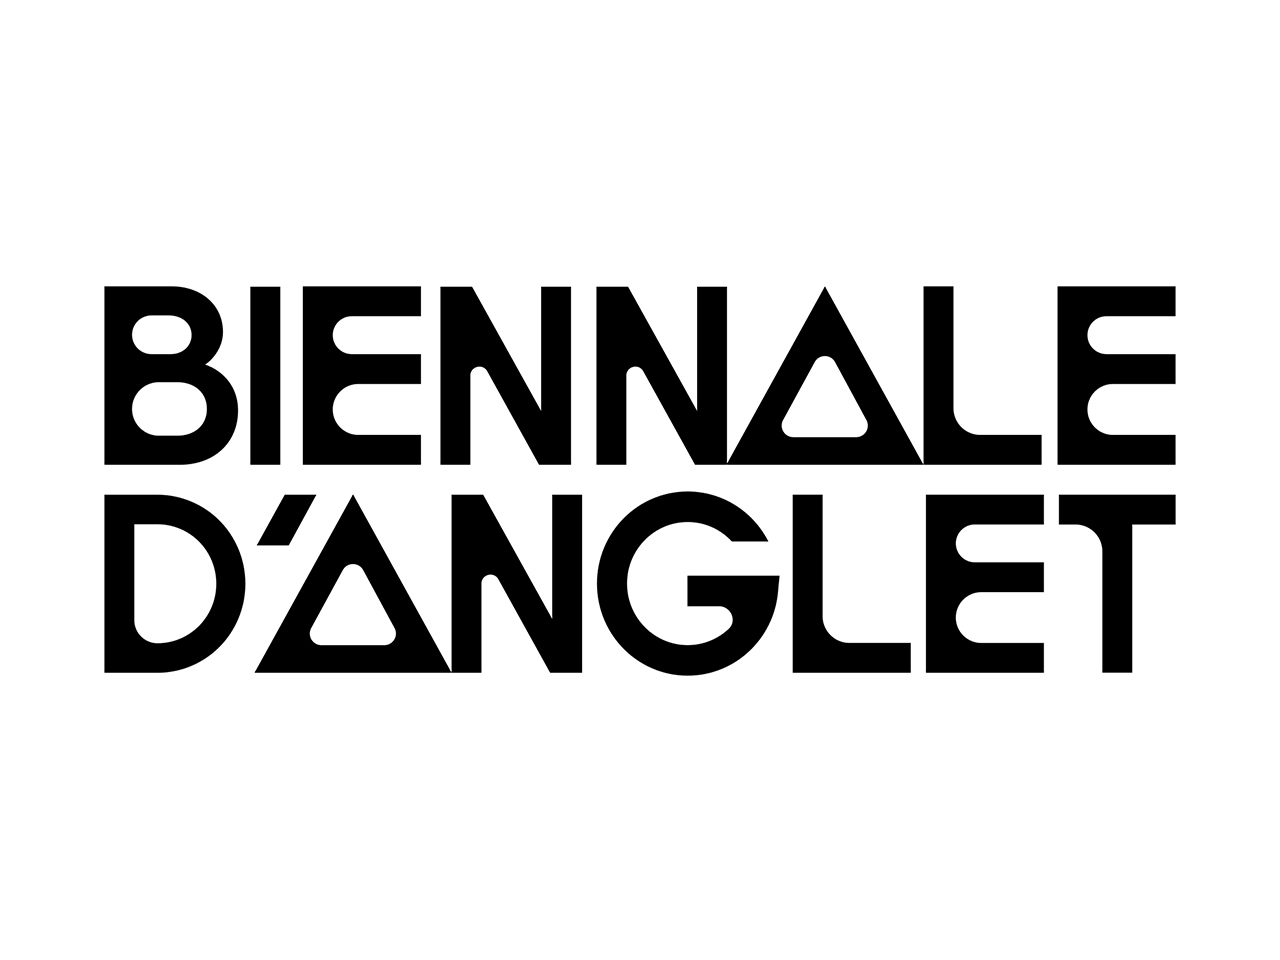 Biennale d'art contemporain d'Anglet - 9ème éd ...